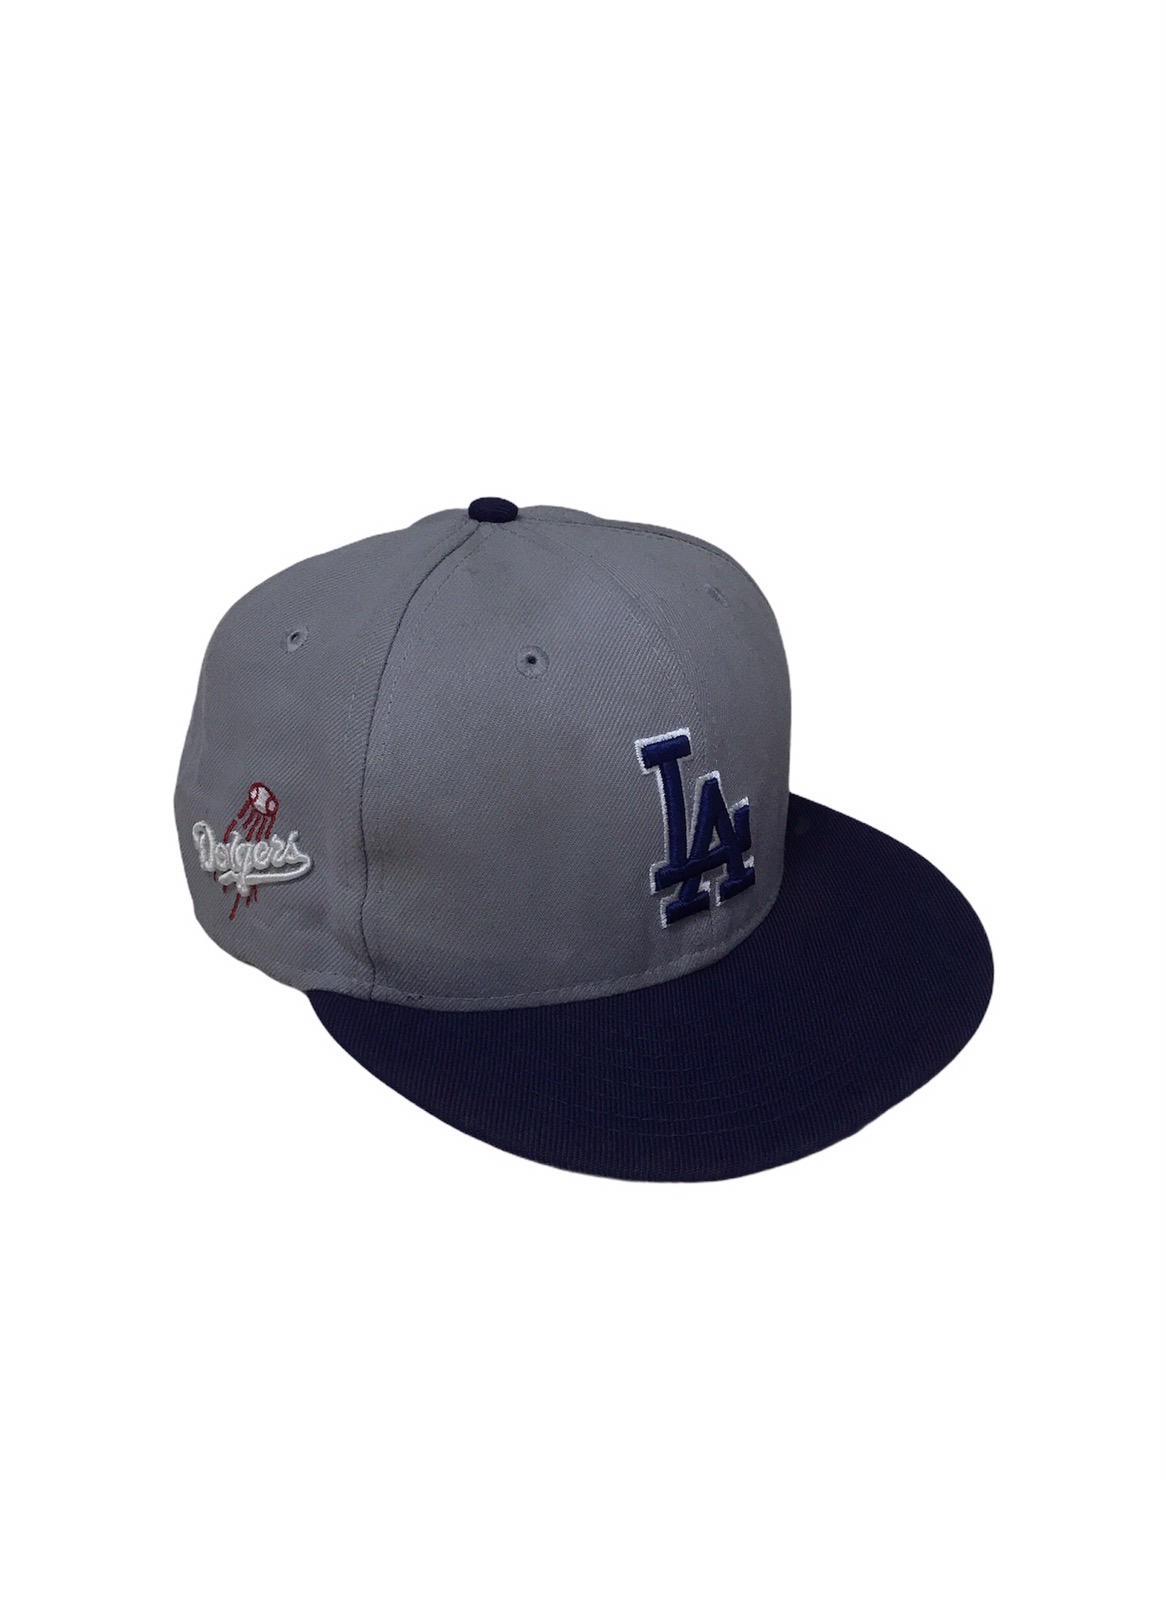 MLB - Vintage LA Dodgers Snapback MLB New Era Cap Hat - 1